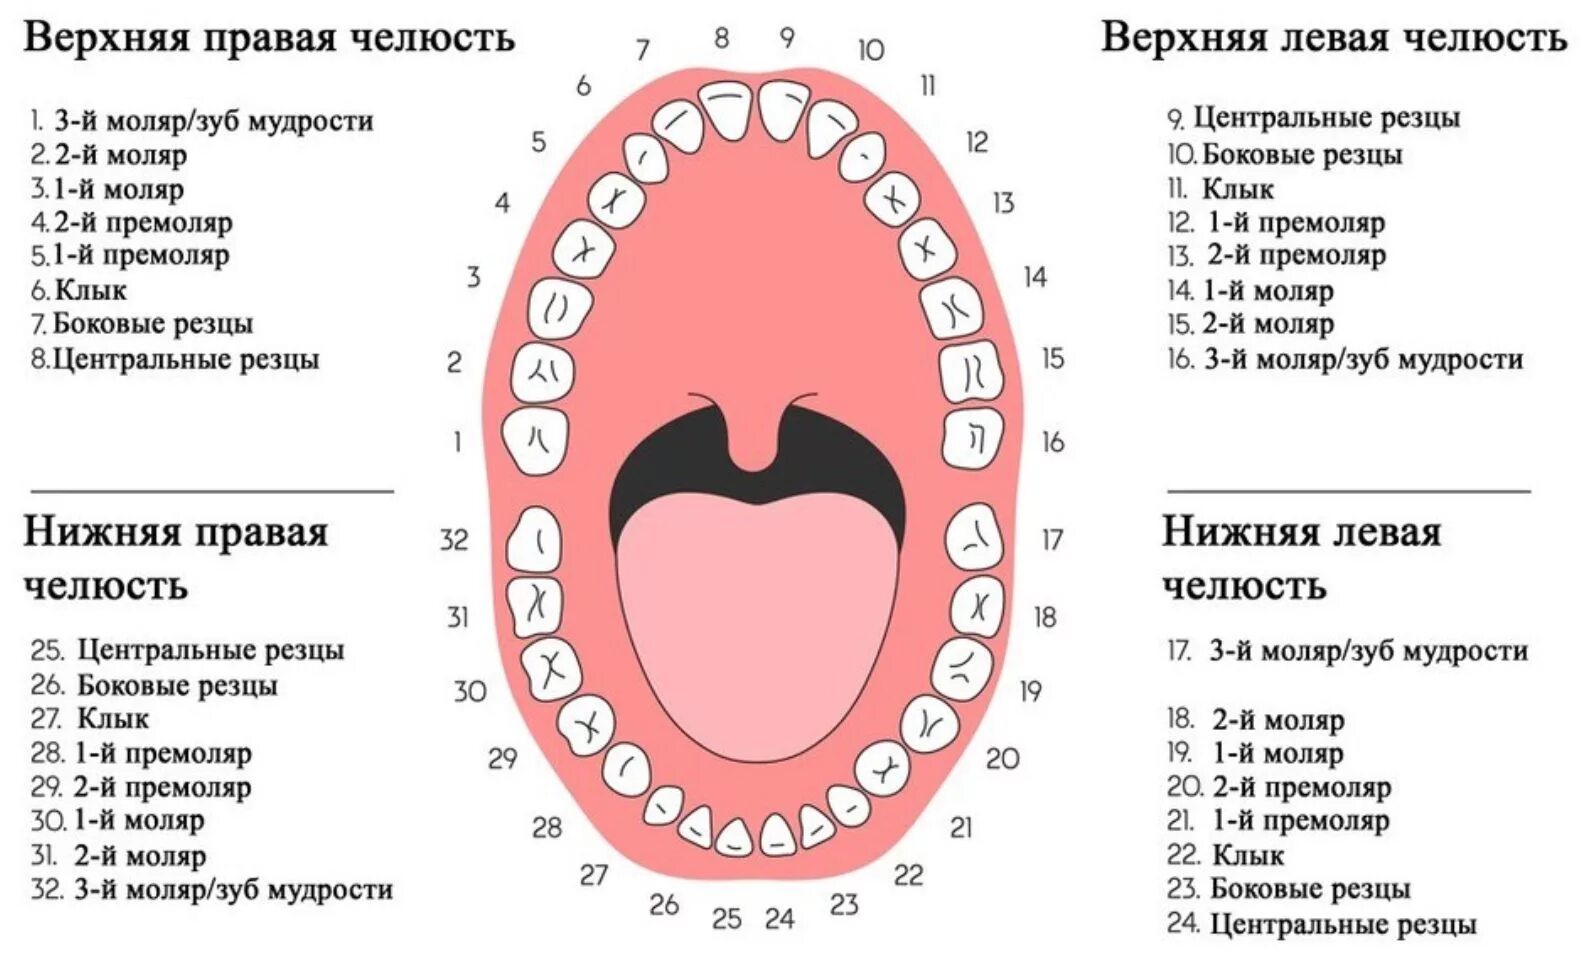 3 5 8 зуб. Зубы нижняя челюсть нумерация зубов. Нумерация детских зубов в стоматологии схема. Нумерация зубов человеческой челюсти. Схема зубов человека с нумерацией стоматологии.